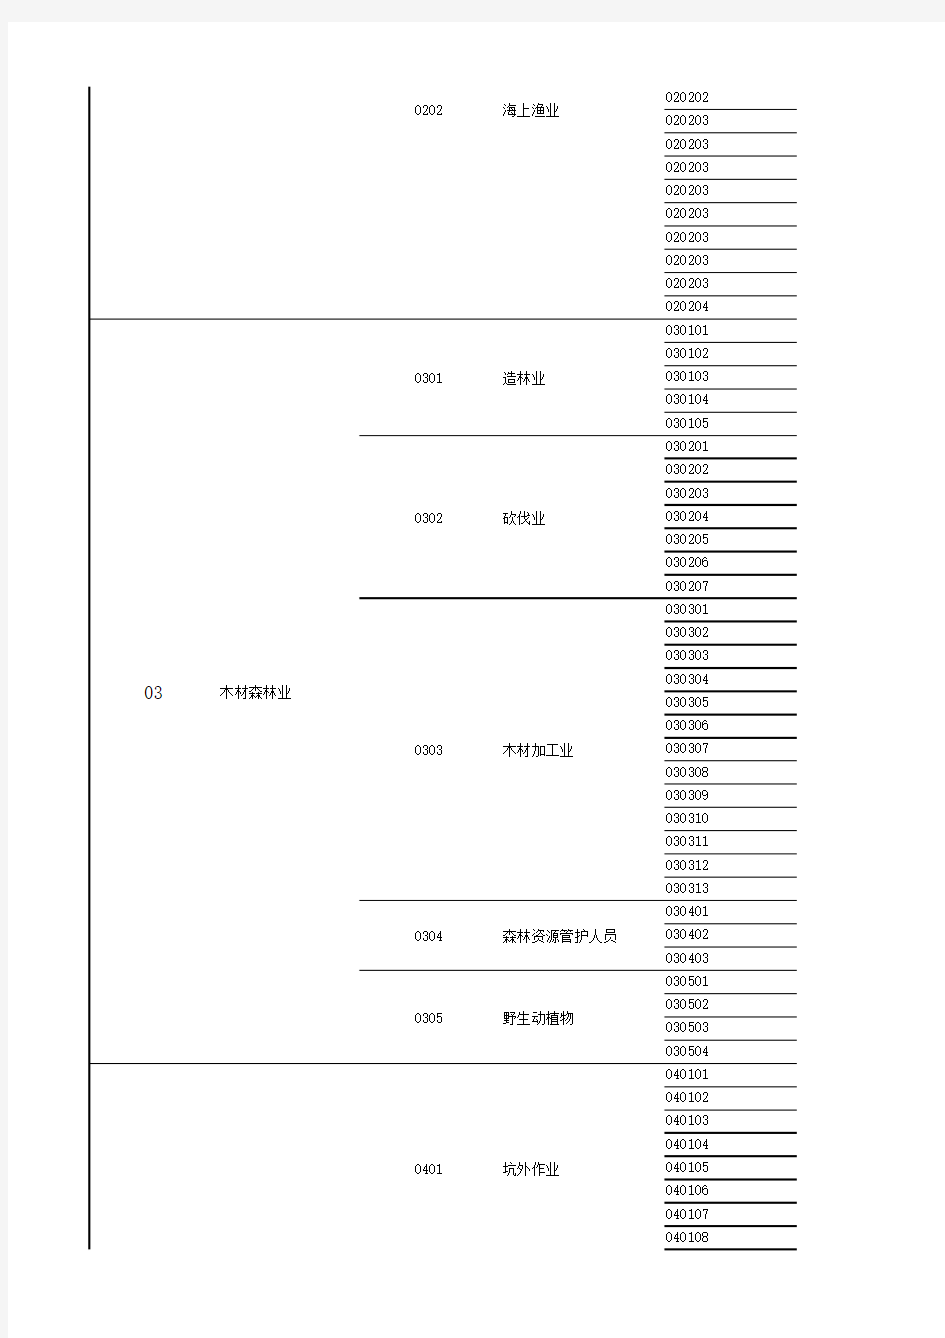 中国人寿2014版意外险职业表分类导入版(20140909)